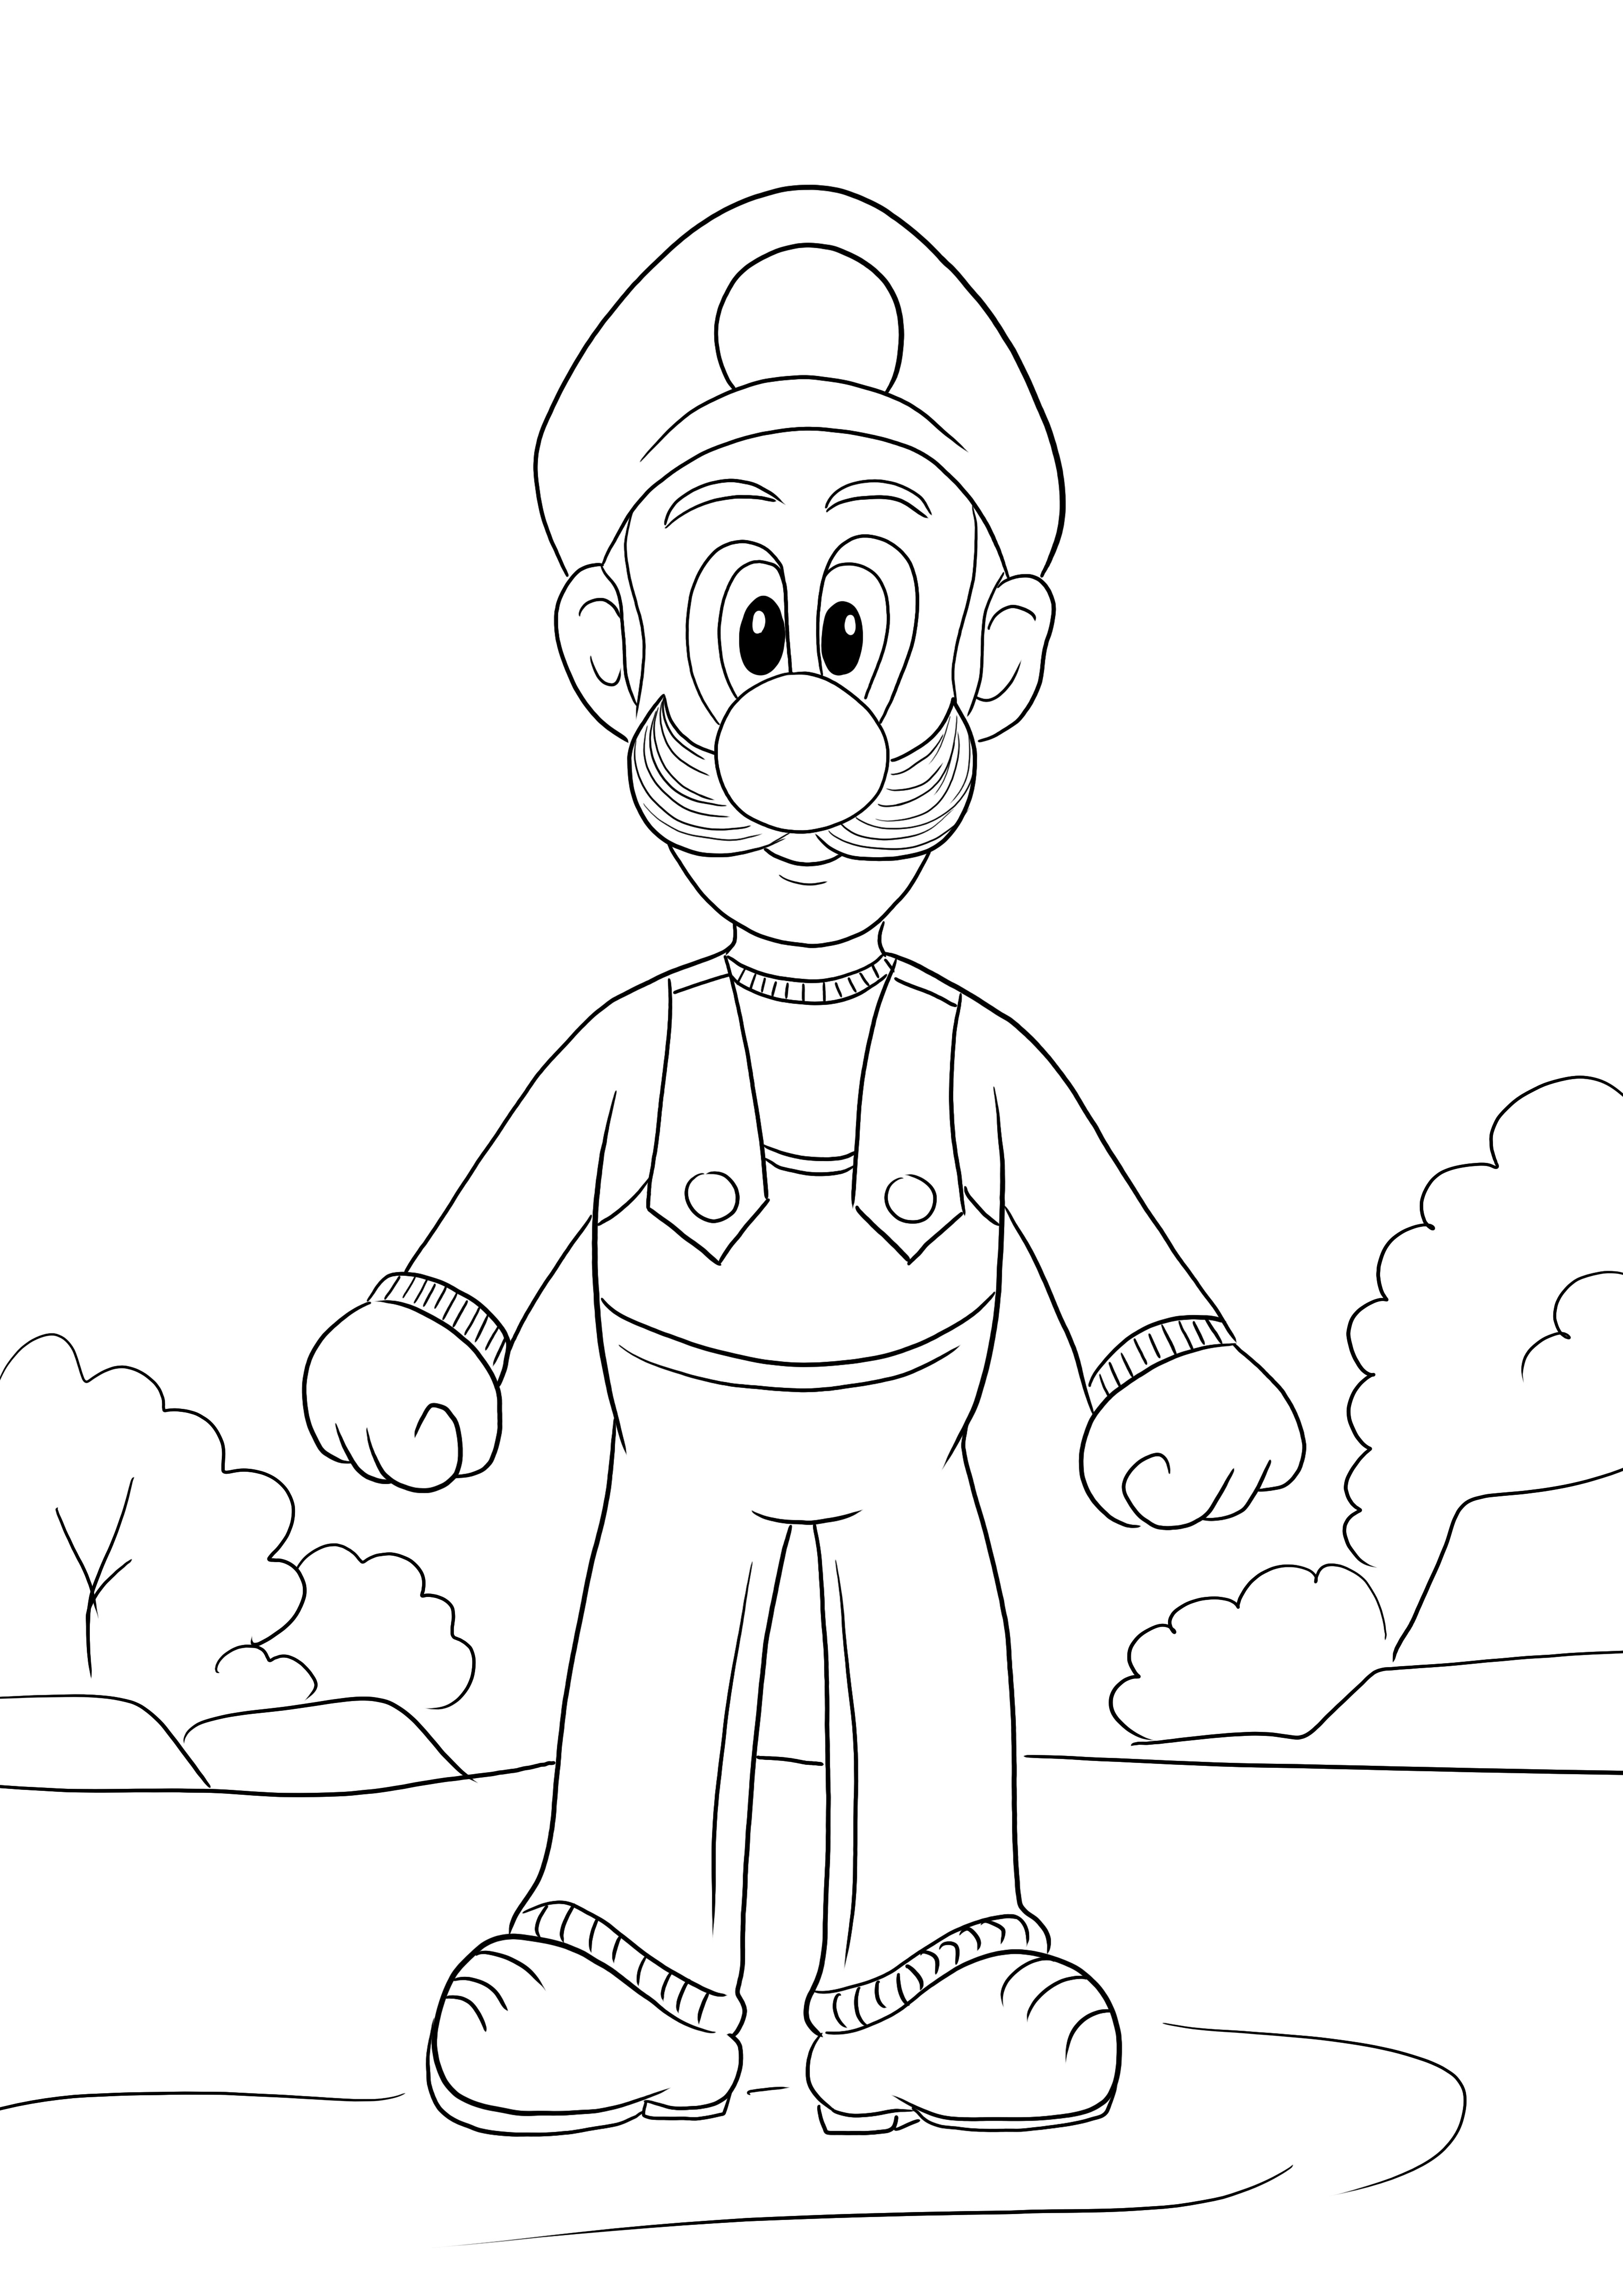 Aquí hay una imagen para colorear gratis de Luigi del juego Super Mario para descargar o imprimir gratis